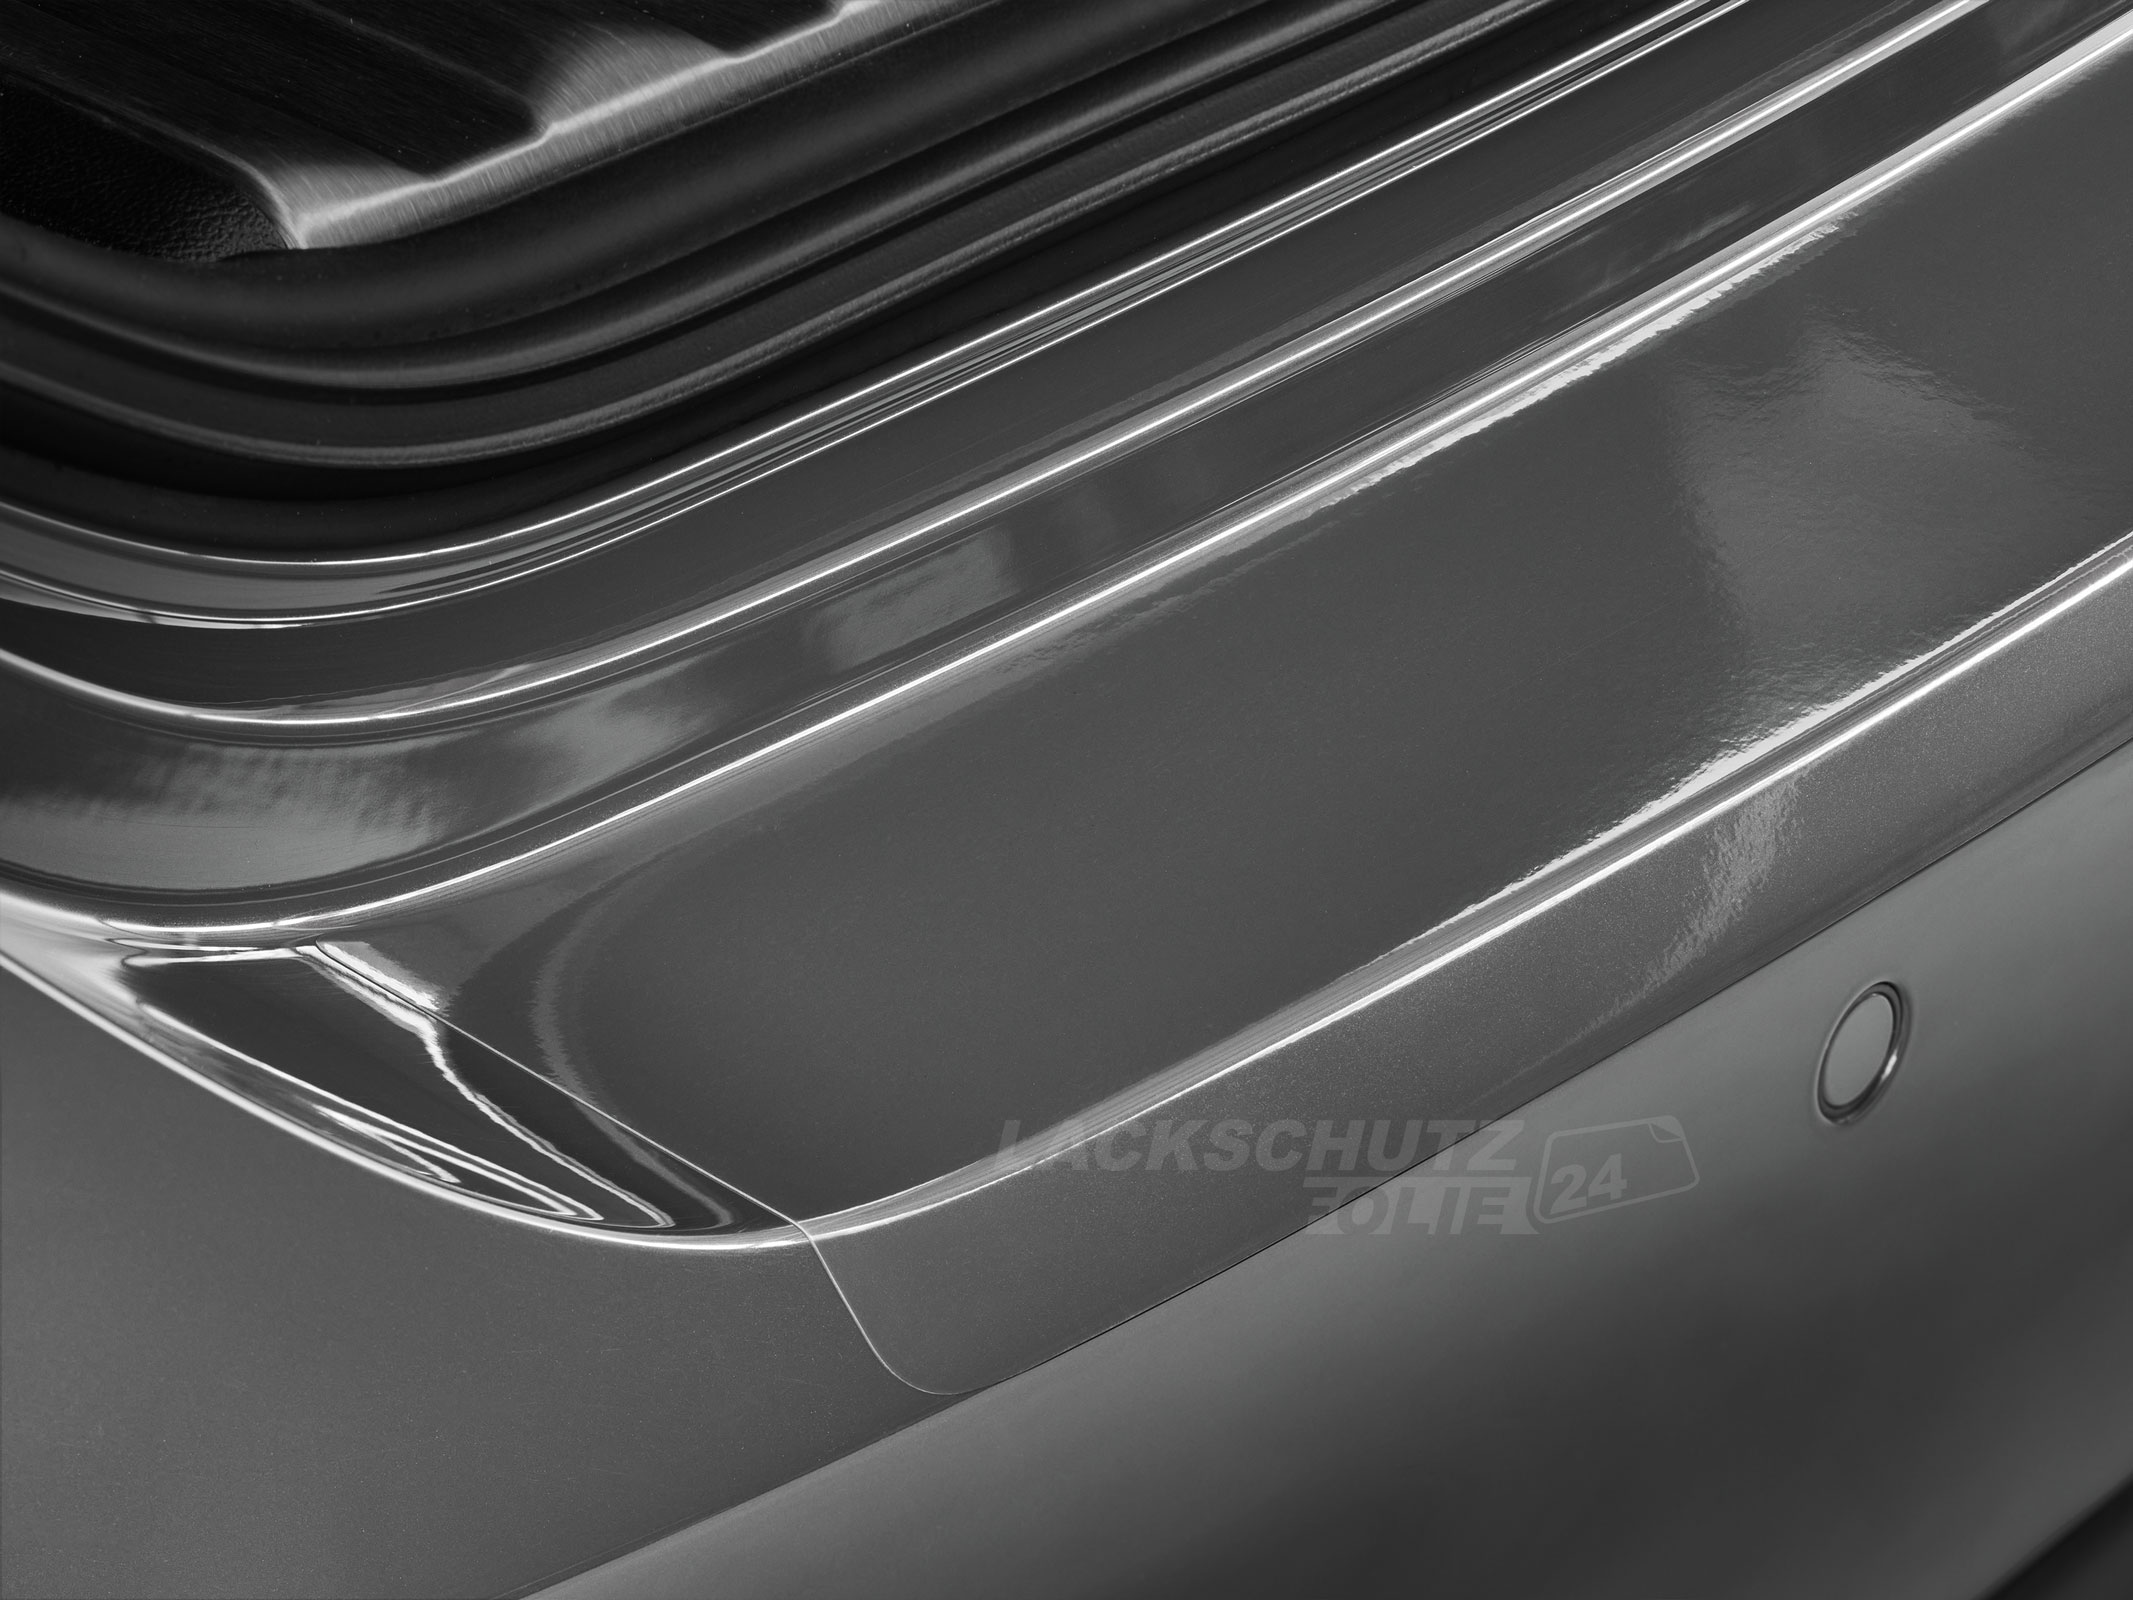 Ladekantenschutzfolie - Transparent Glatt Hochglänzend 150 µm stark für Nissan Note Typ E11, BJ 2005-2013